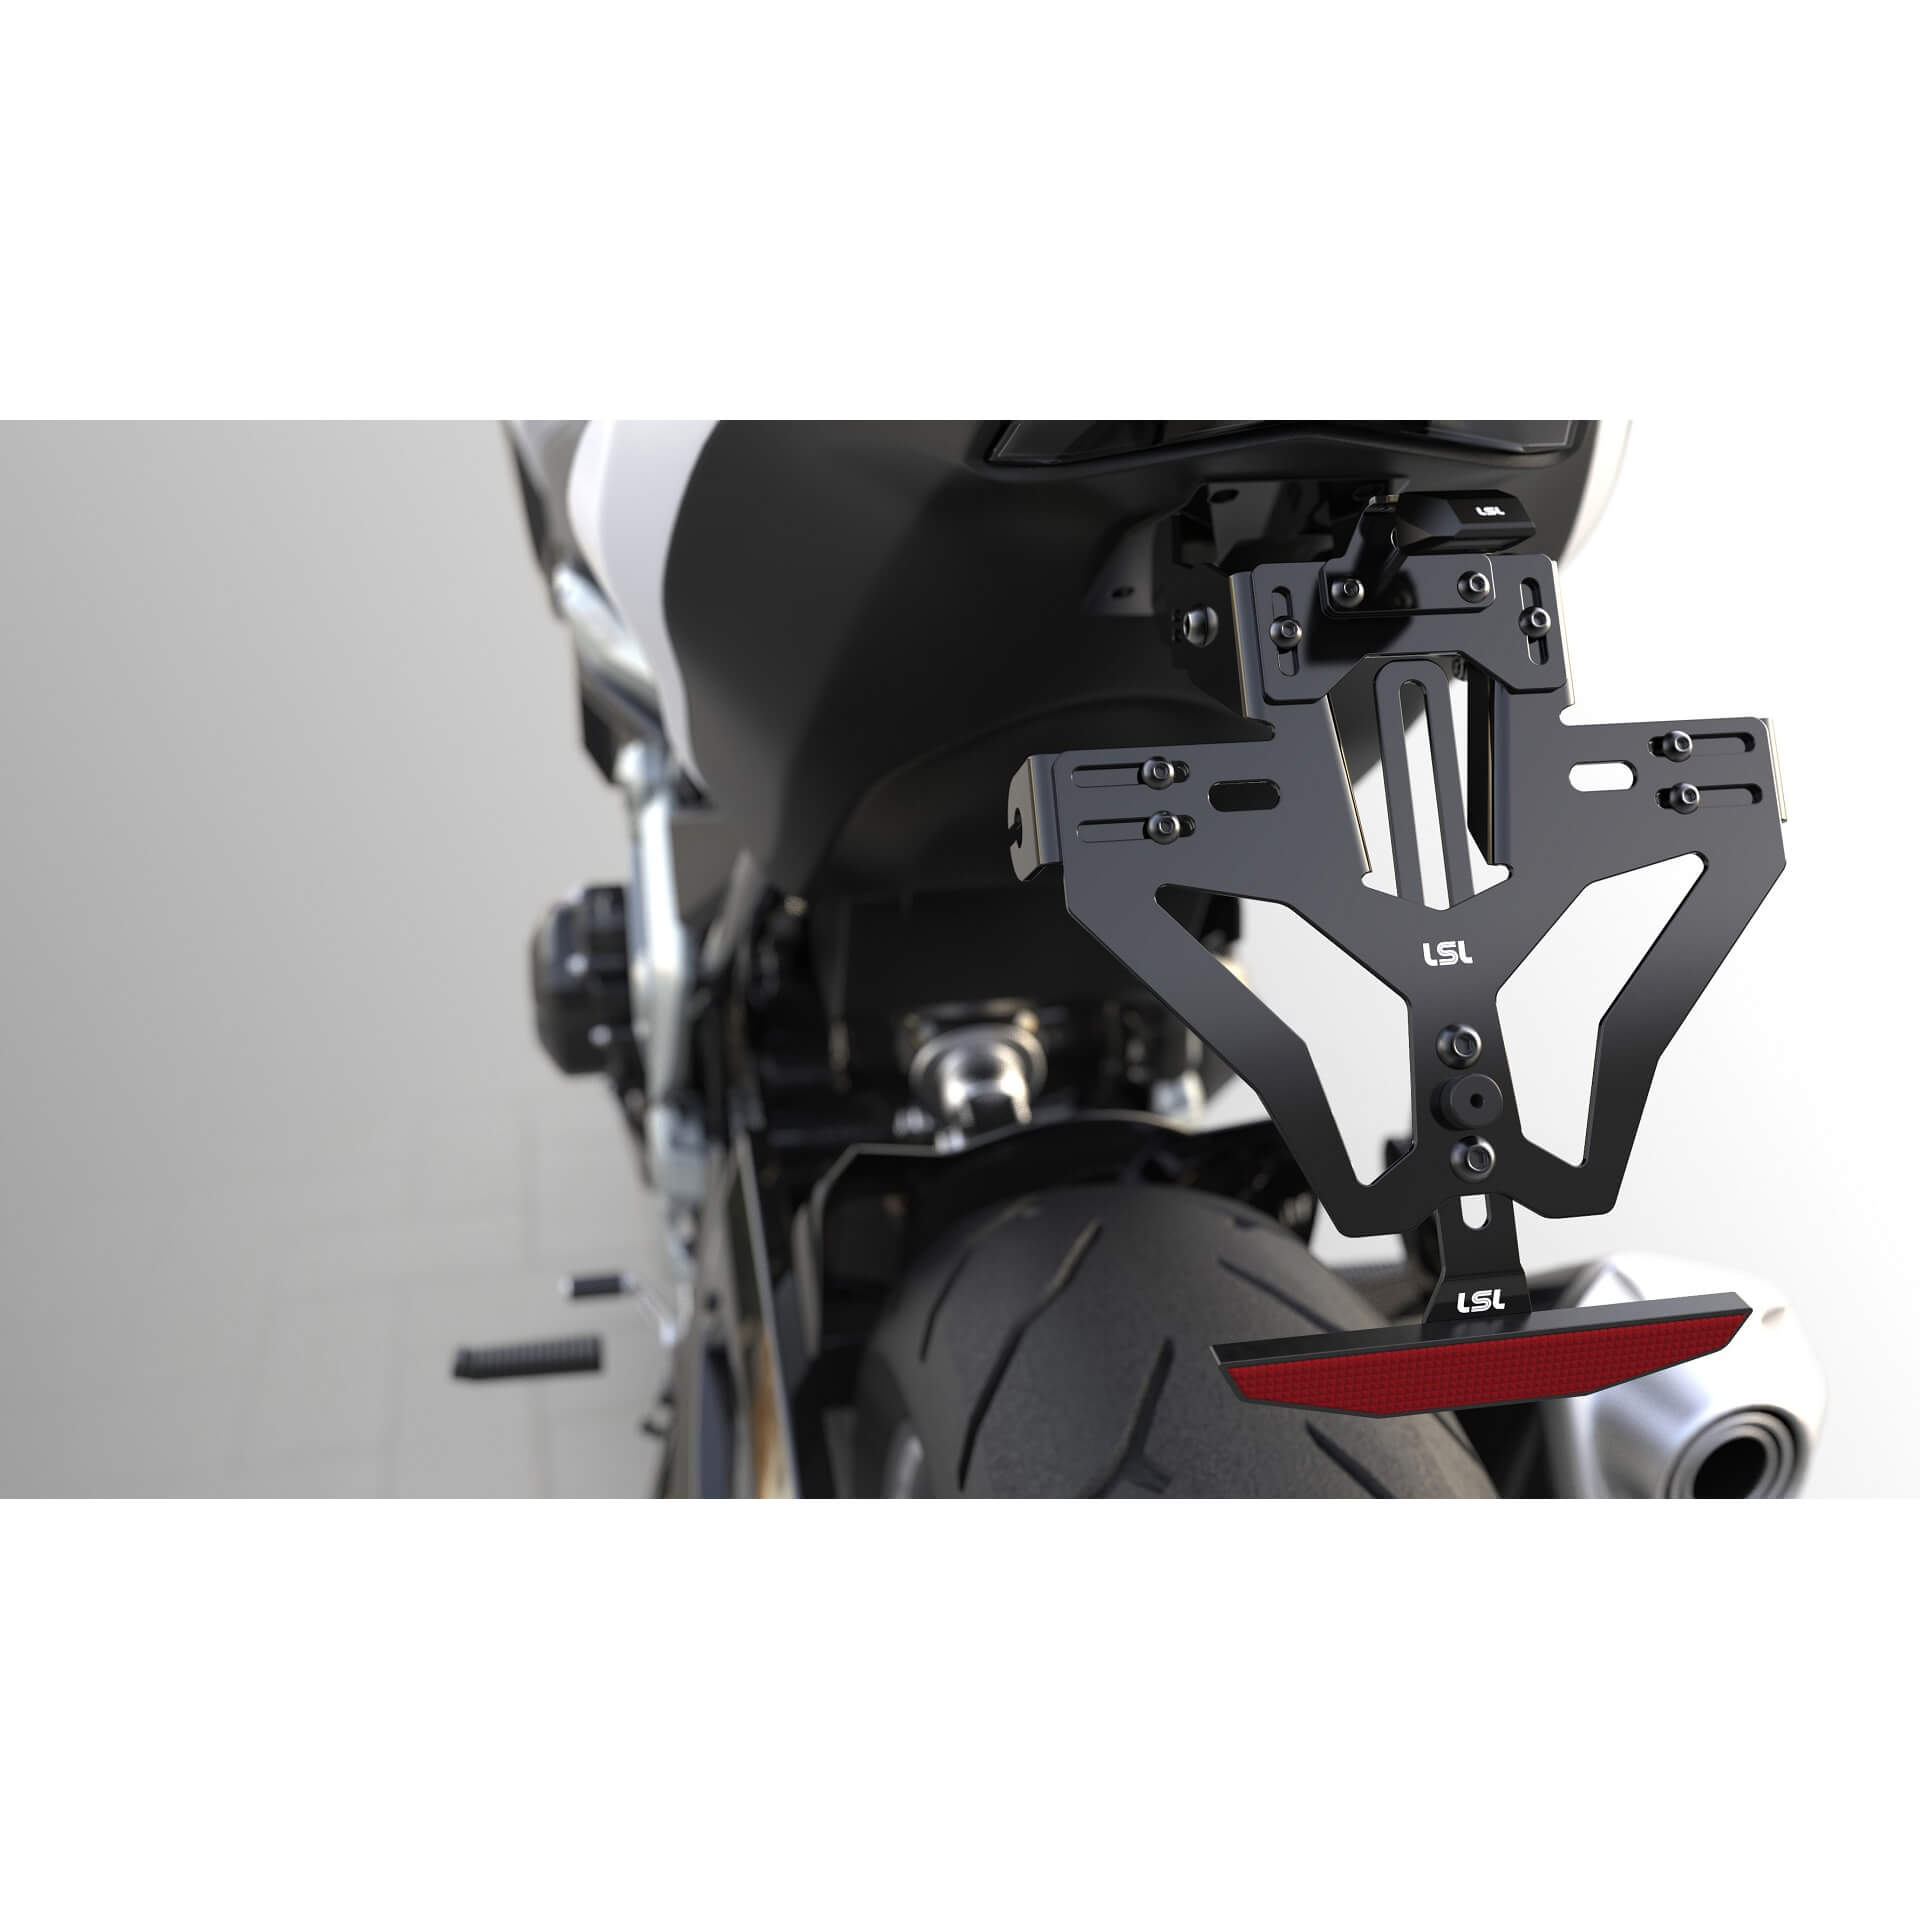 lsl MANTIS-RS PRO für Honda CBR 600 RR/ CBR 1000 RR, inkl. Kennzeichenbeleuchtung